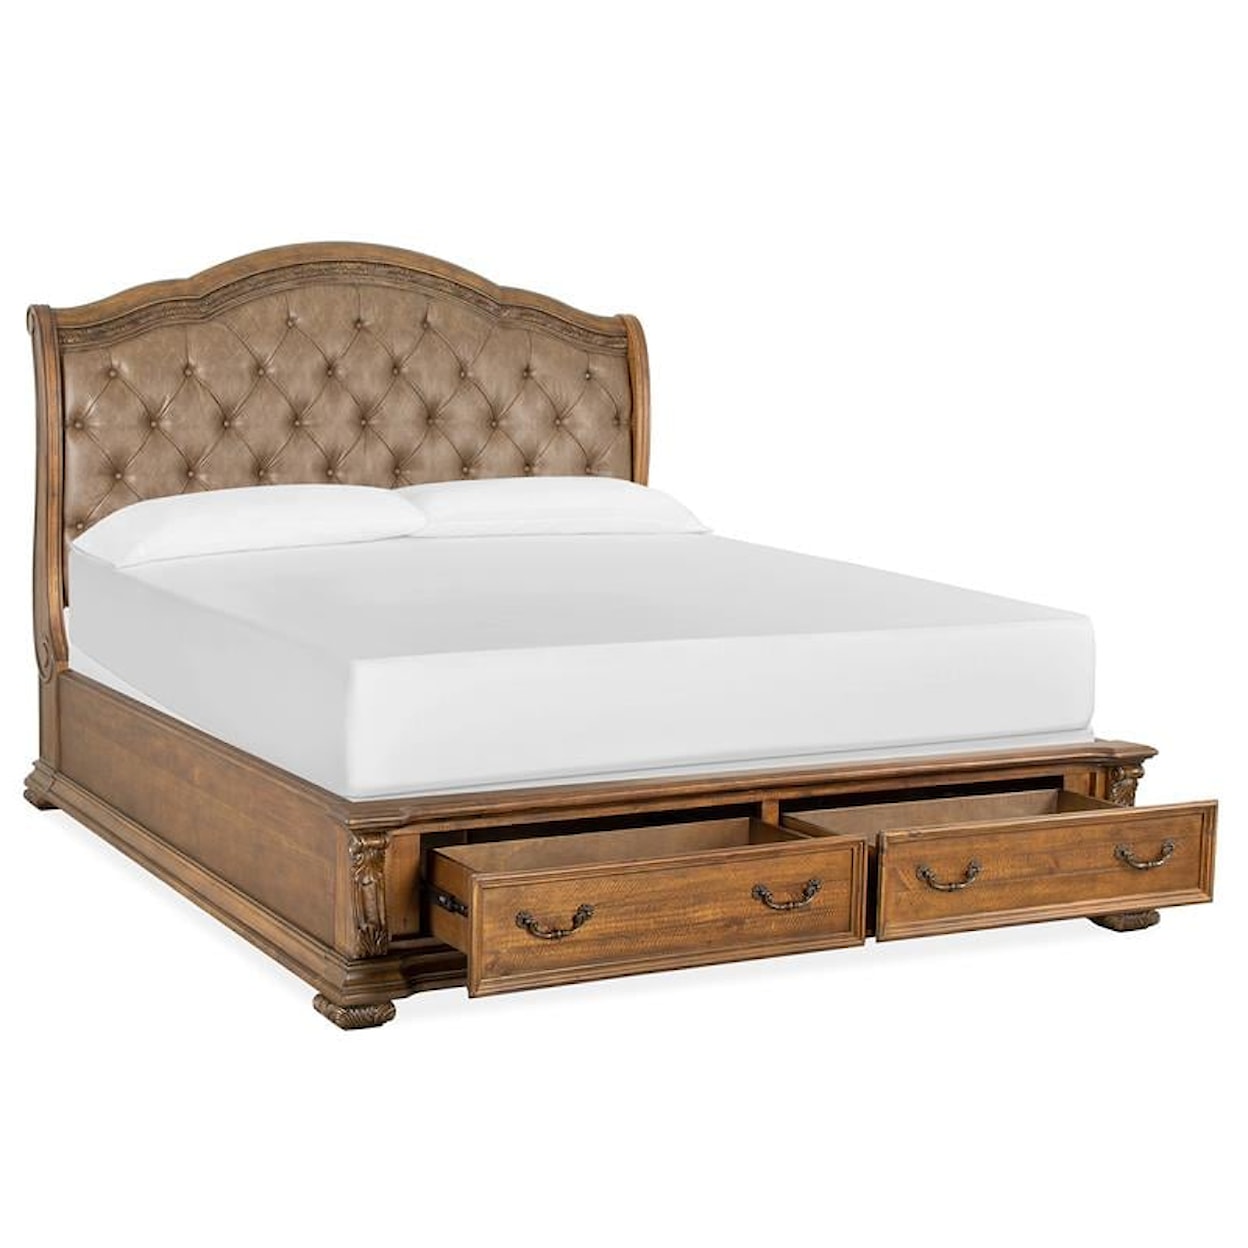 Magnussen Home Durango Bedroom Queen Upholstered Sleigh Bed